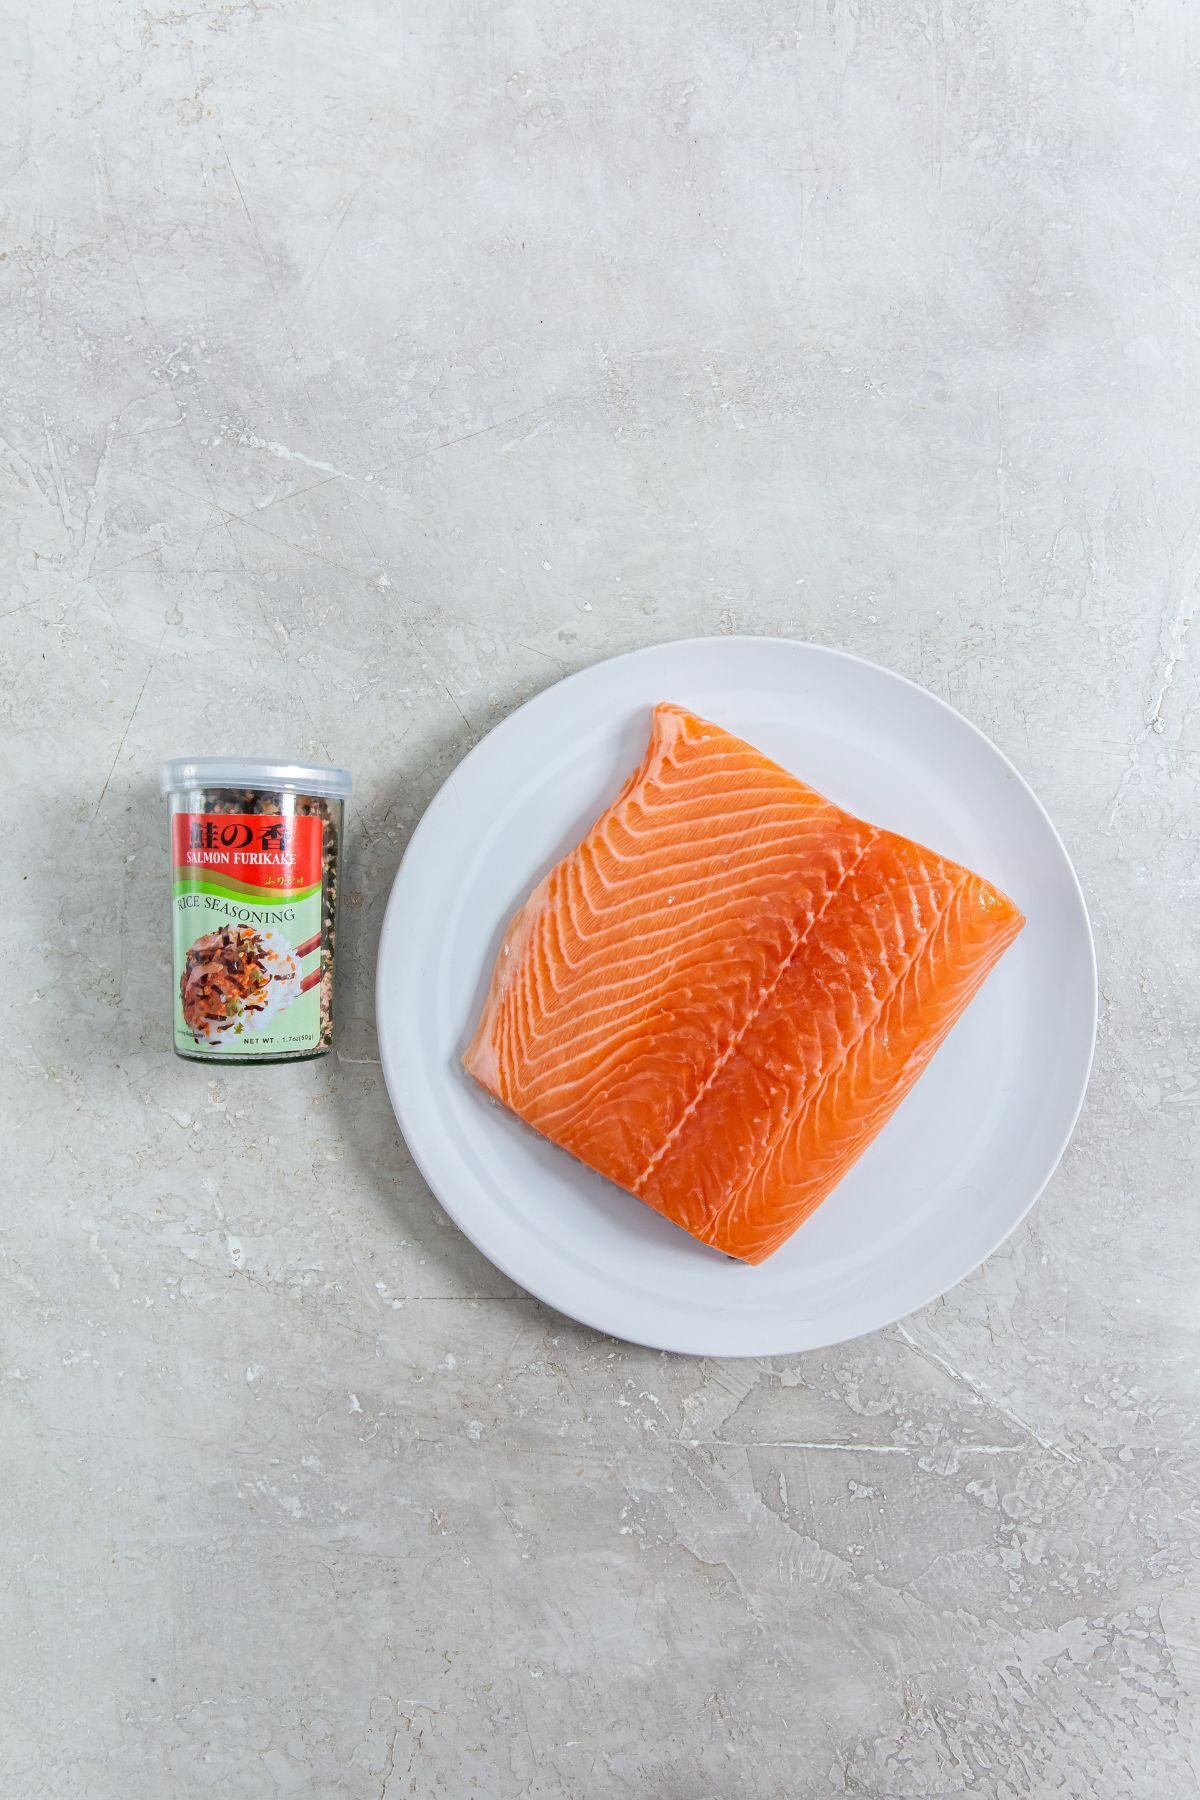 ingredients of salmon and furikake seasoning